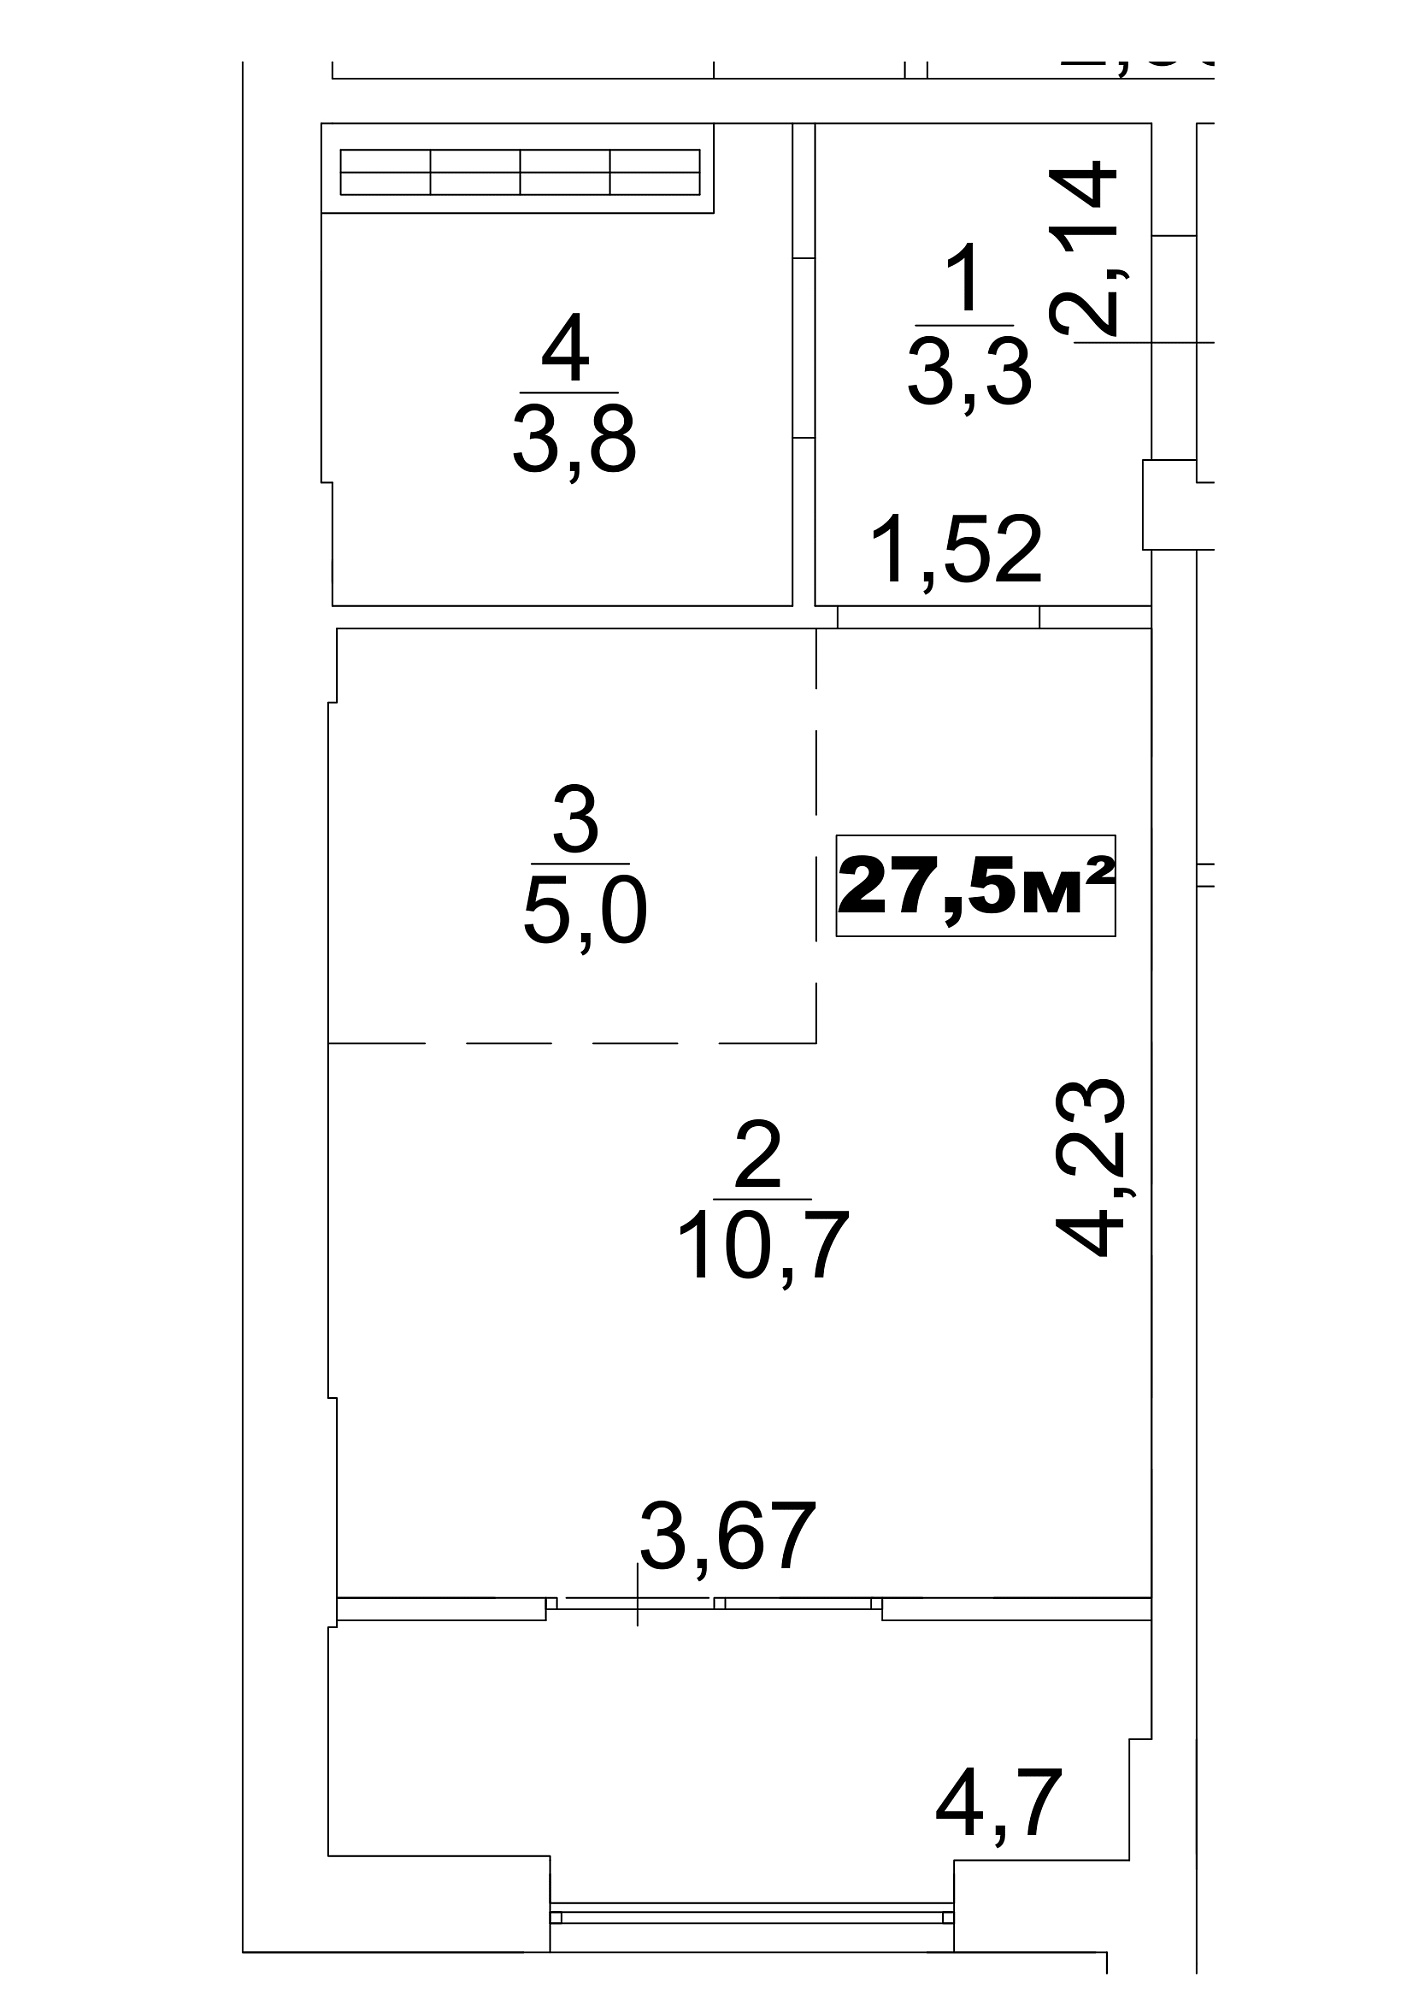 Планировка Smart-квартира площей 27.5м2, AB-13-06/0045а.